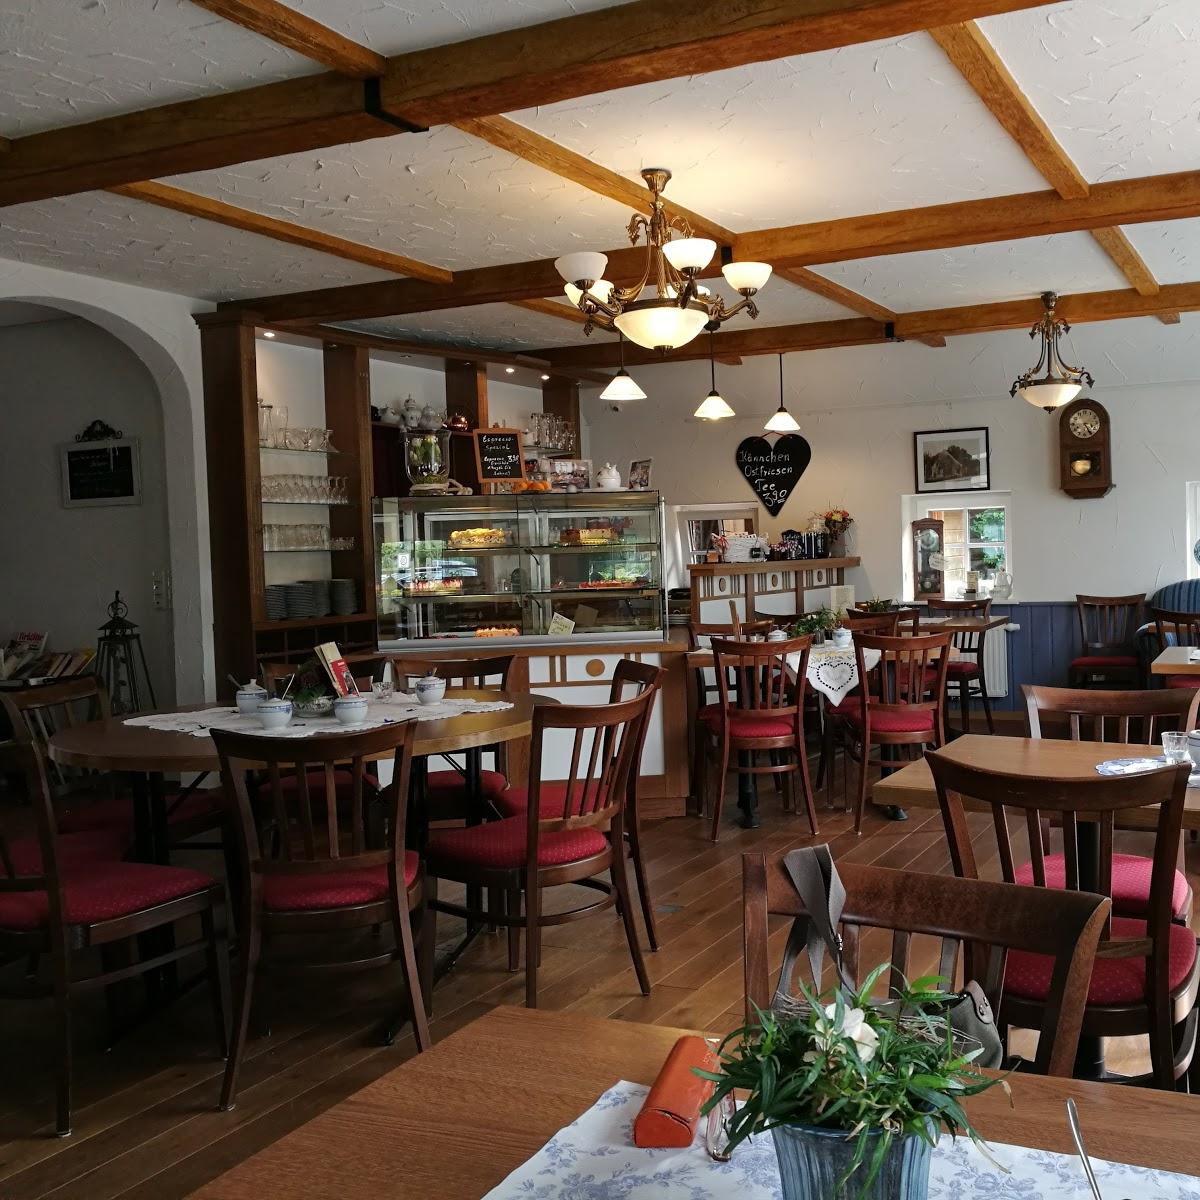 Restaurant "Café · Friesische Teestube Stövchen" in Wangerland